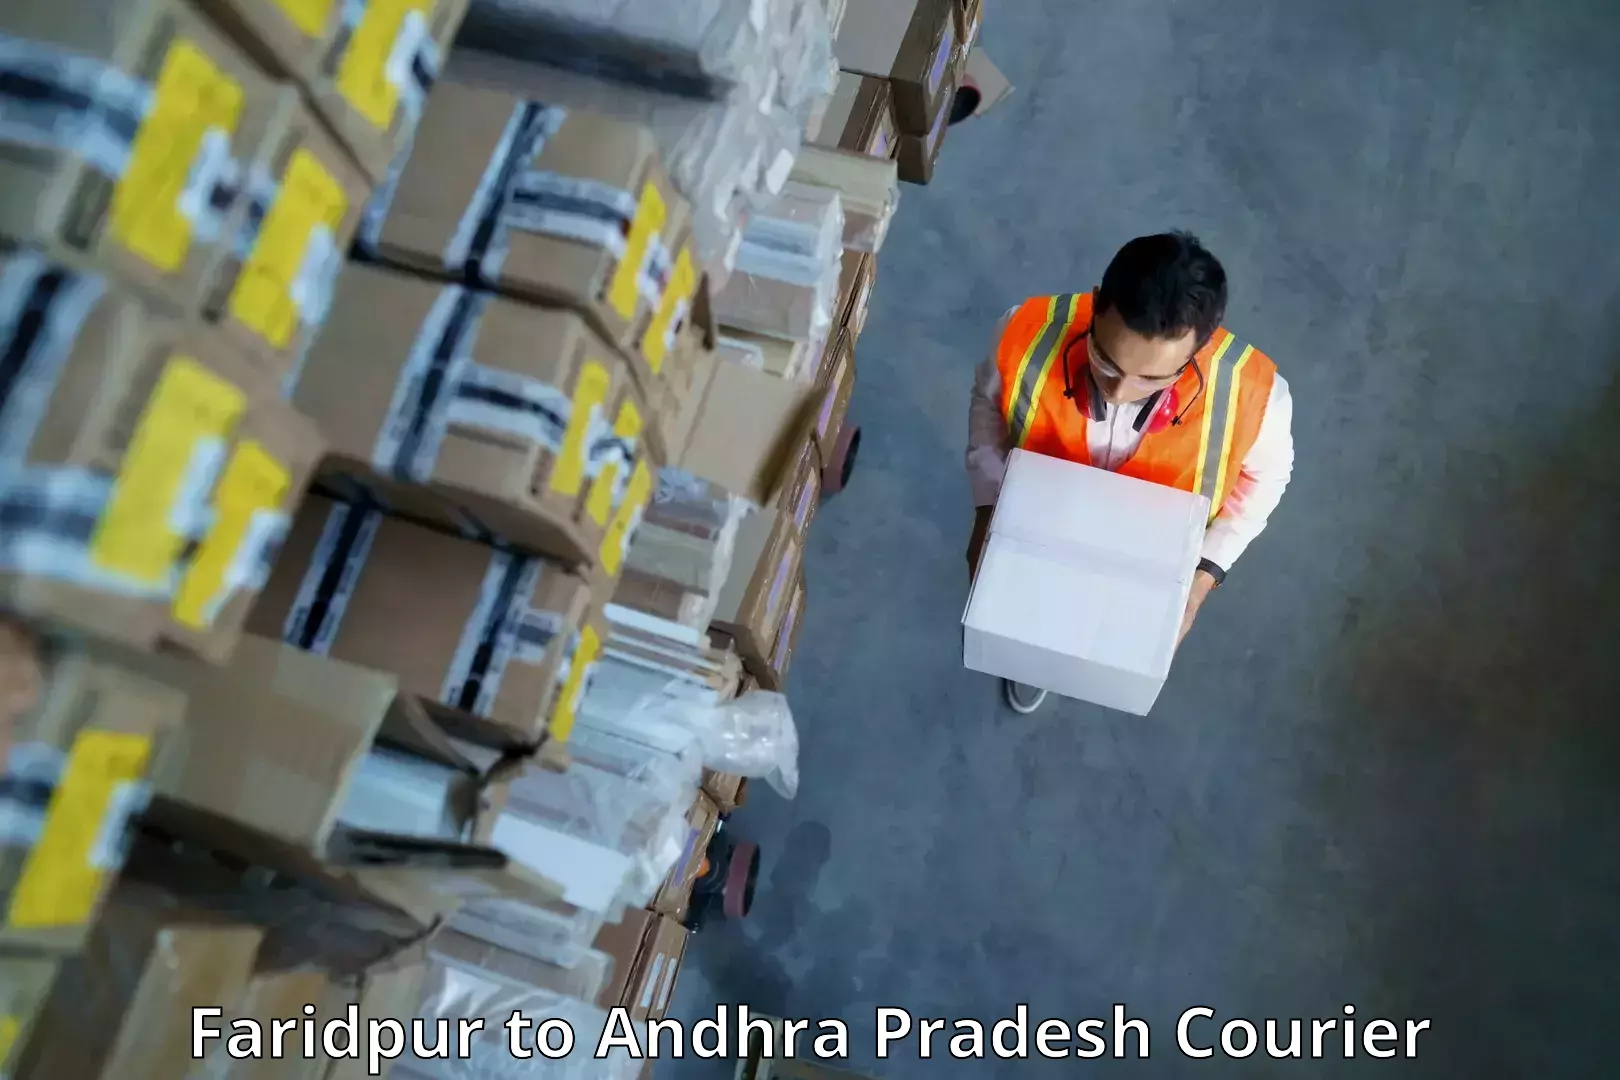 Professional parcel services Faridpur to Sarvepalli Nellore